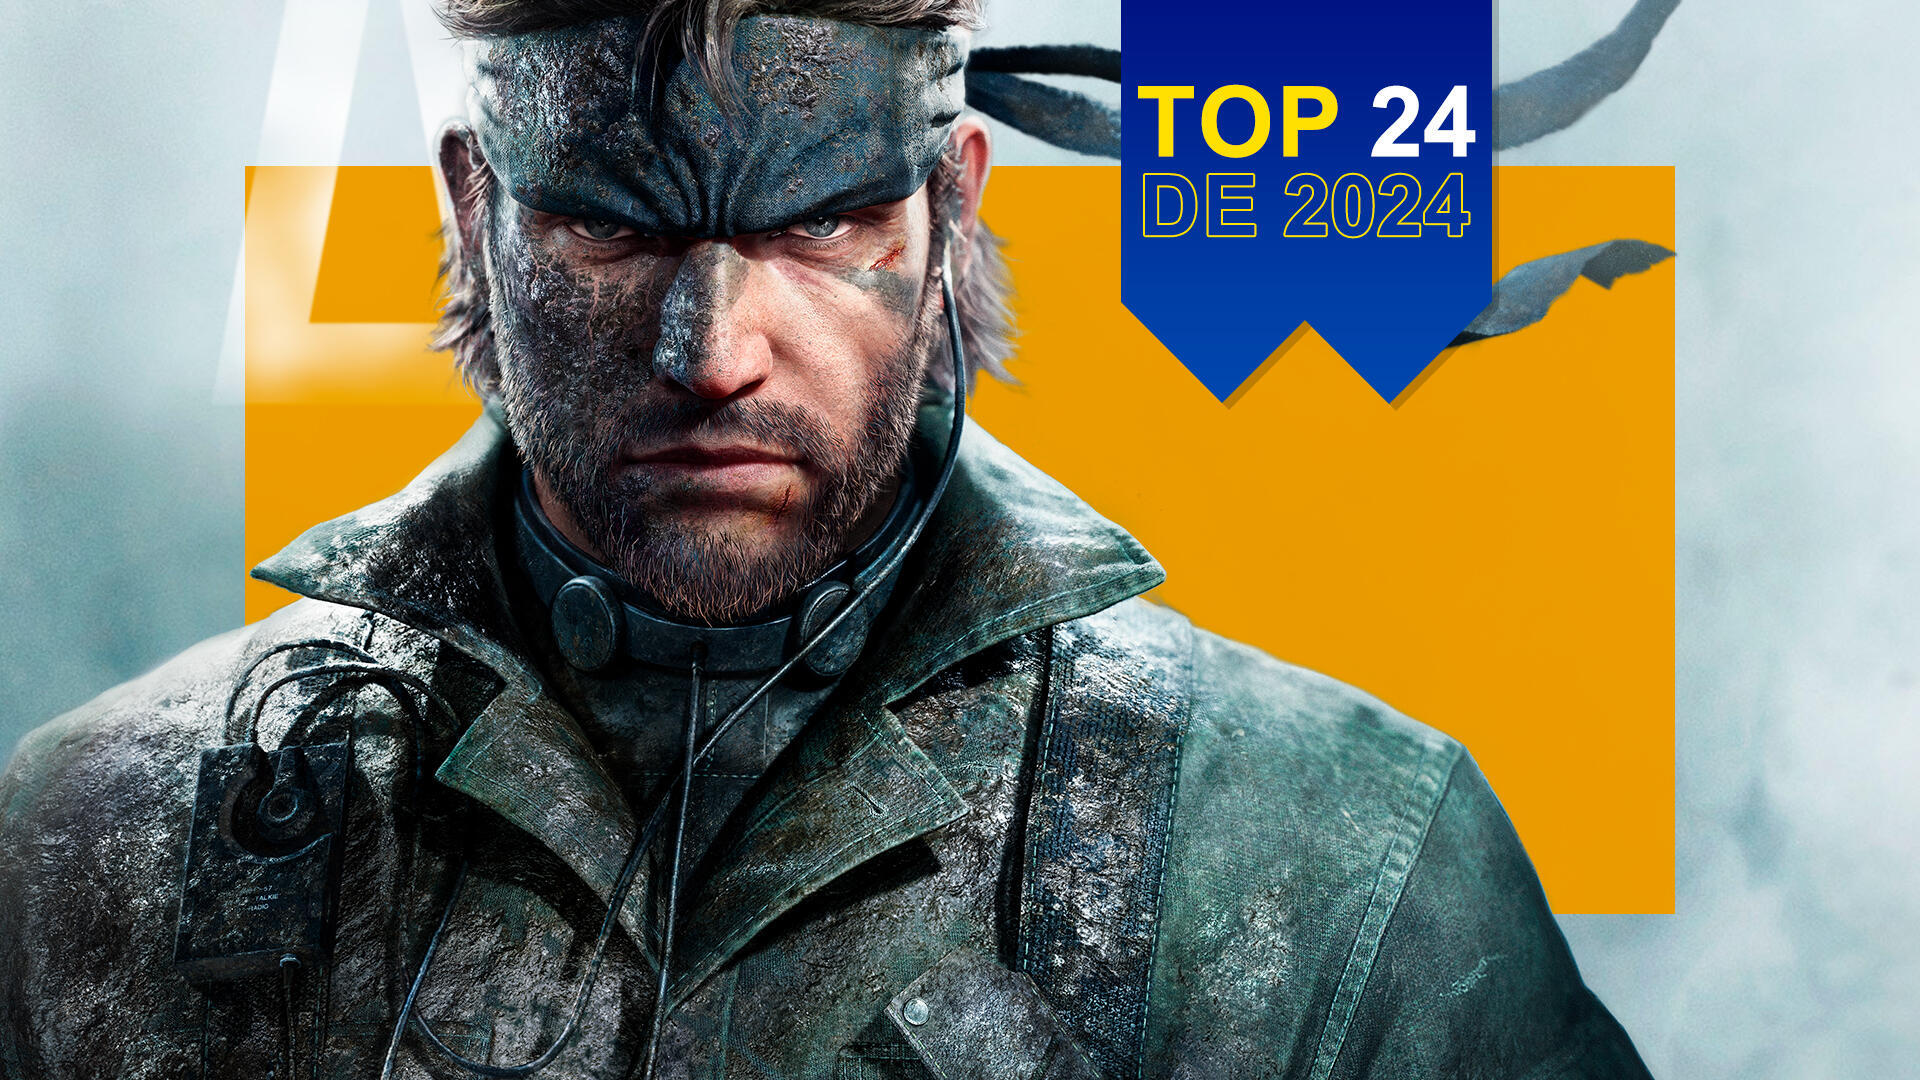 Los 24 de 2024: ¿Por qué Metal Gear Solid Delta: Snake Eater es uno de los juegos más esperados del año?